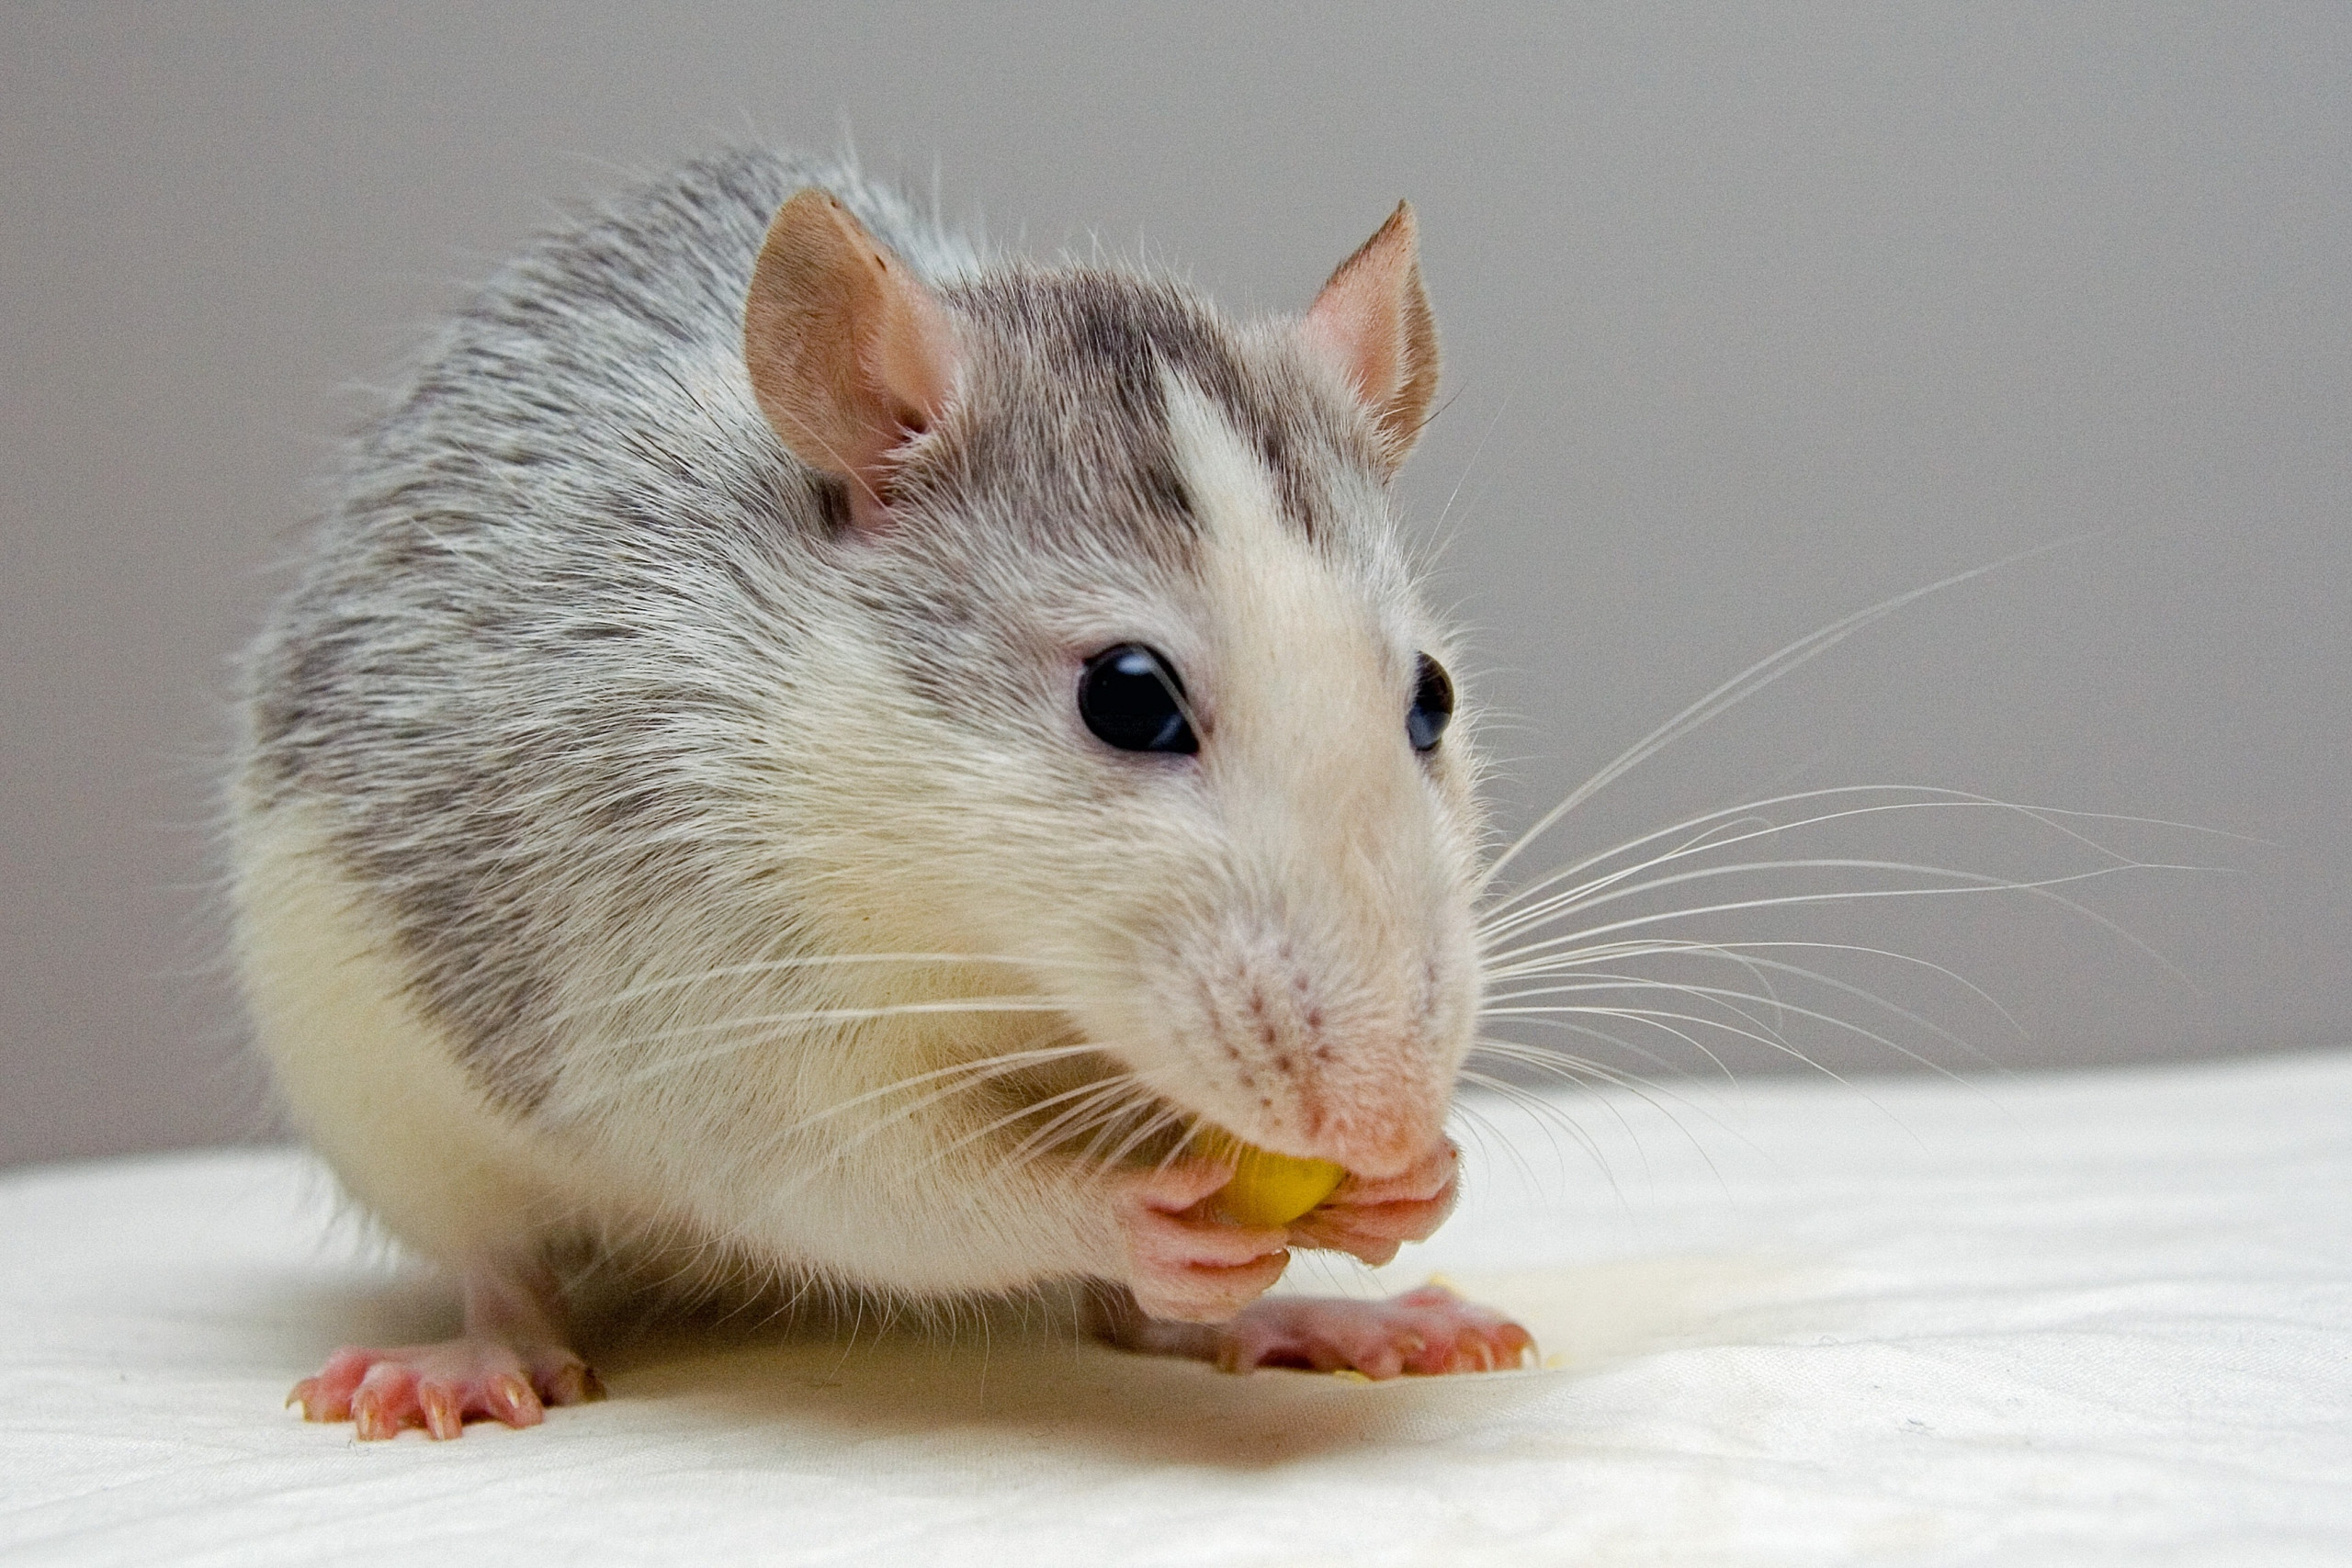 Plagas de roedores: diferencias entre ratas y ratones